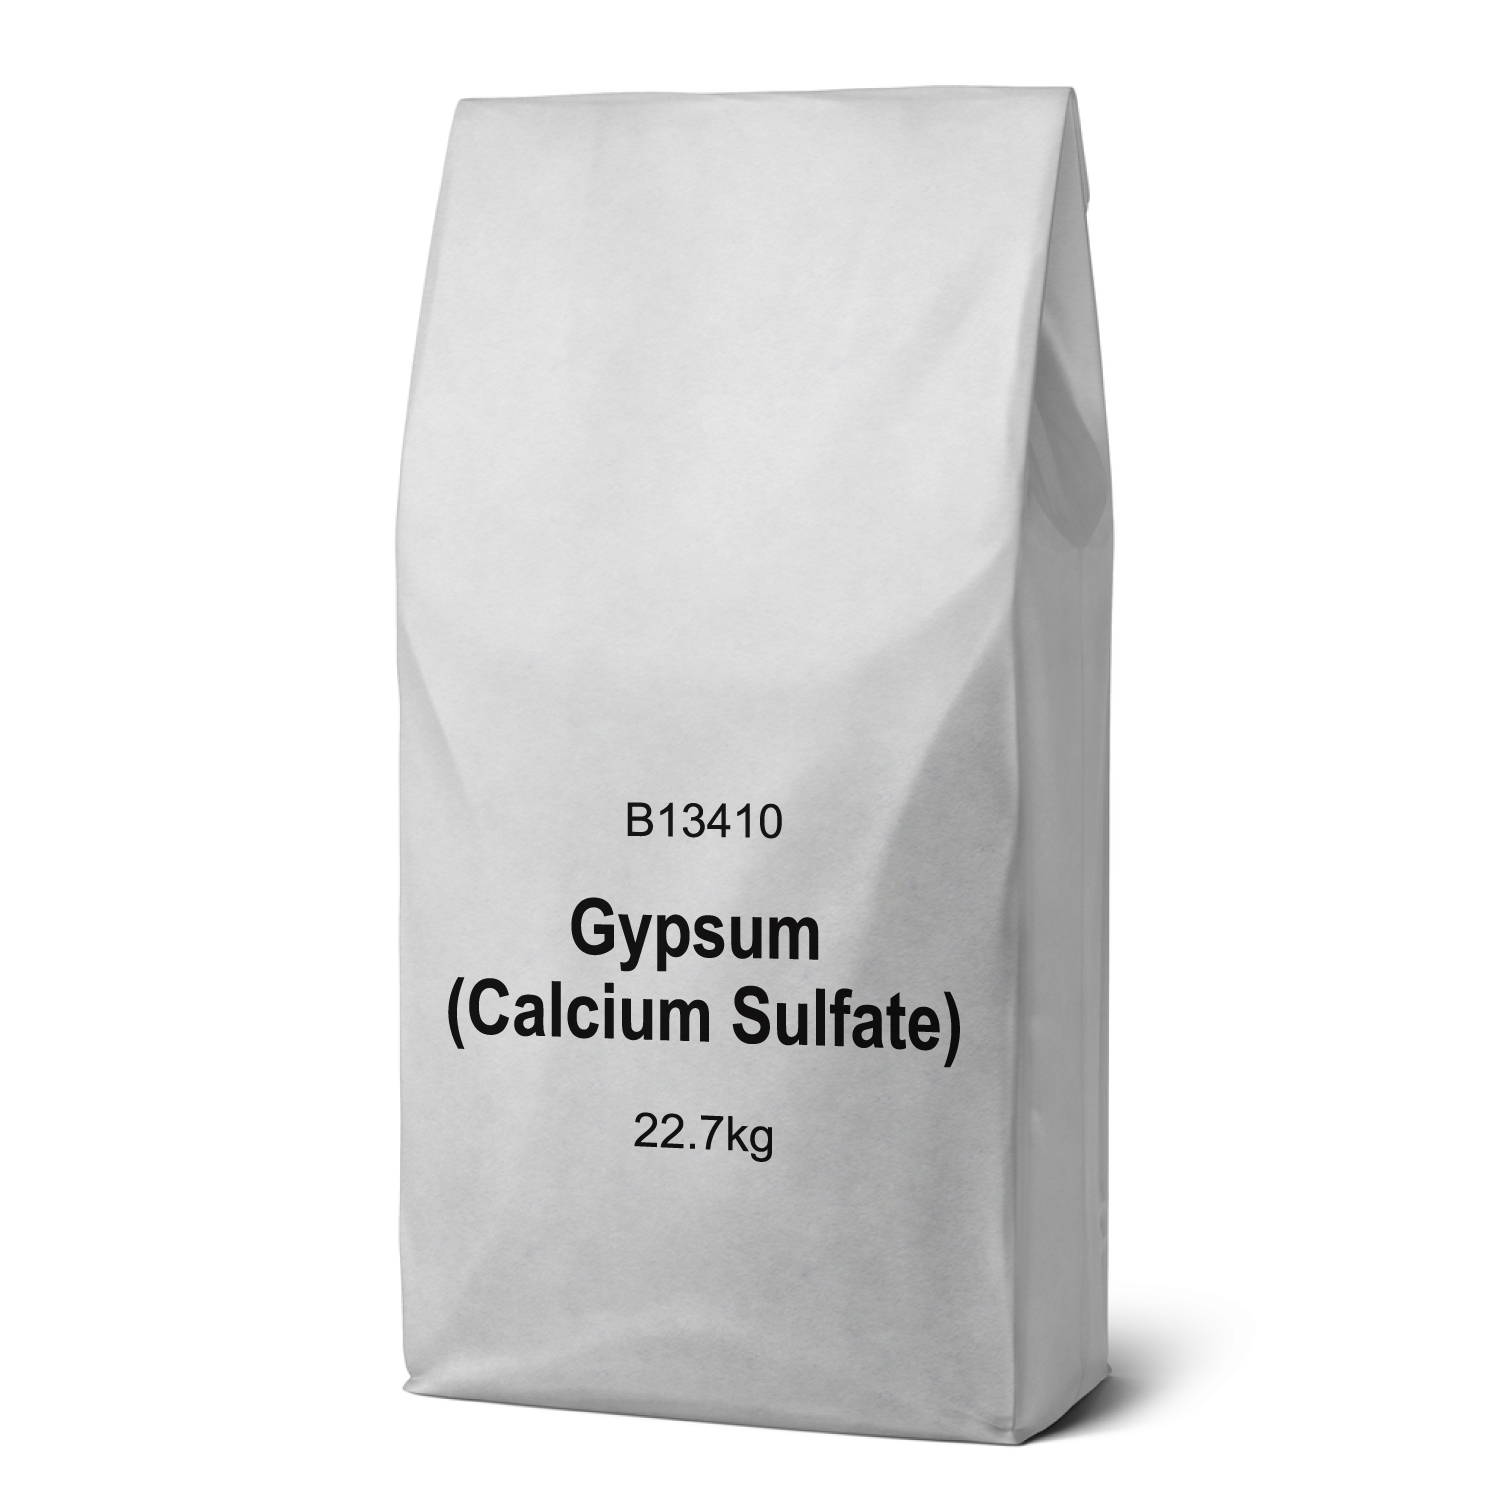 Product image for Gypsum (Calcium Sulfate)